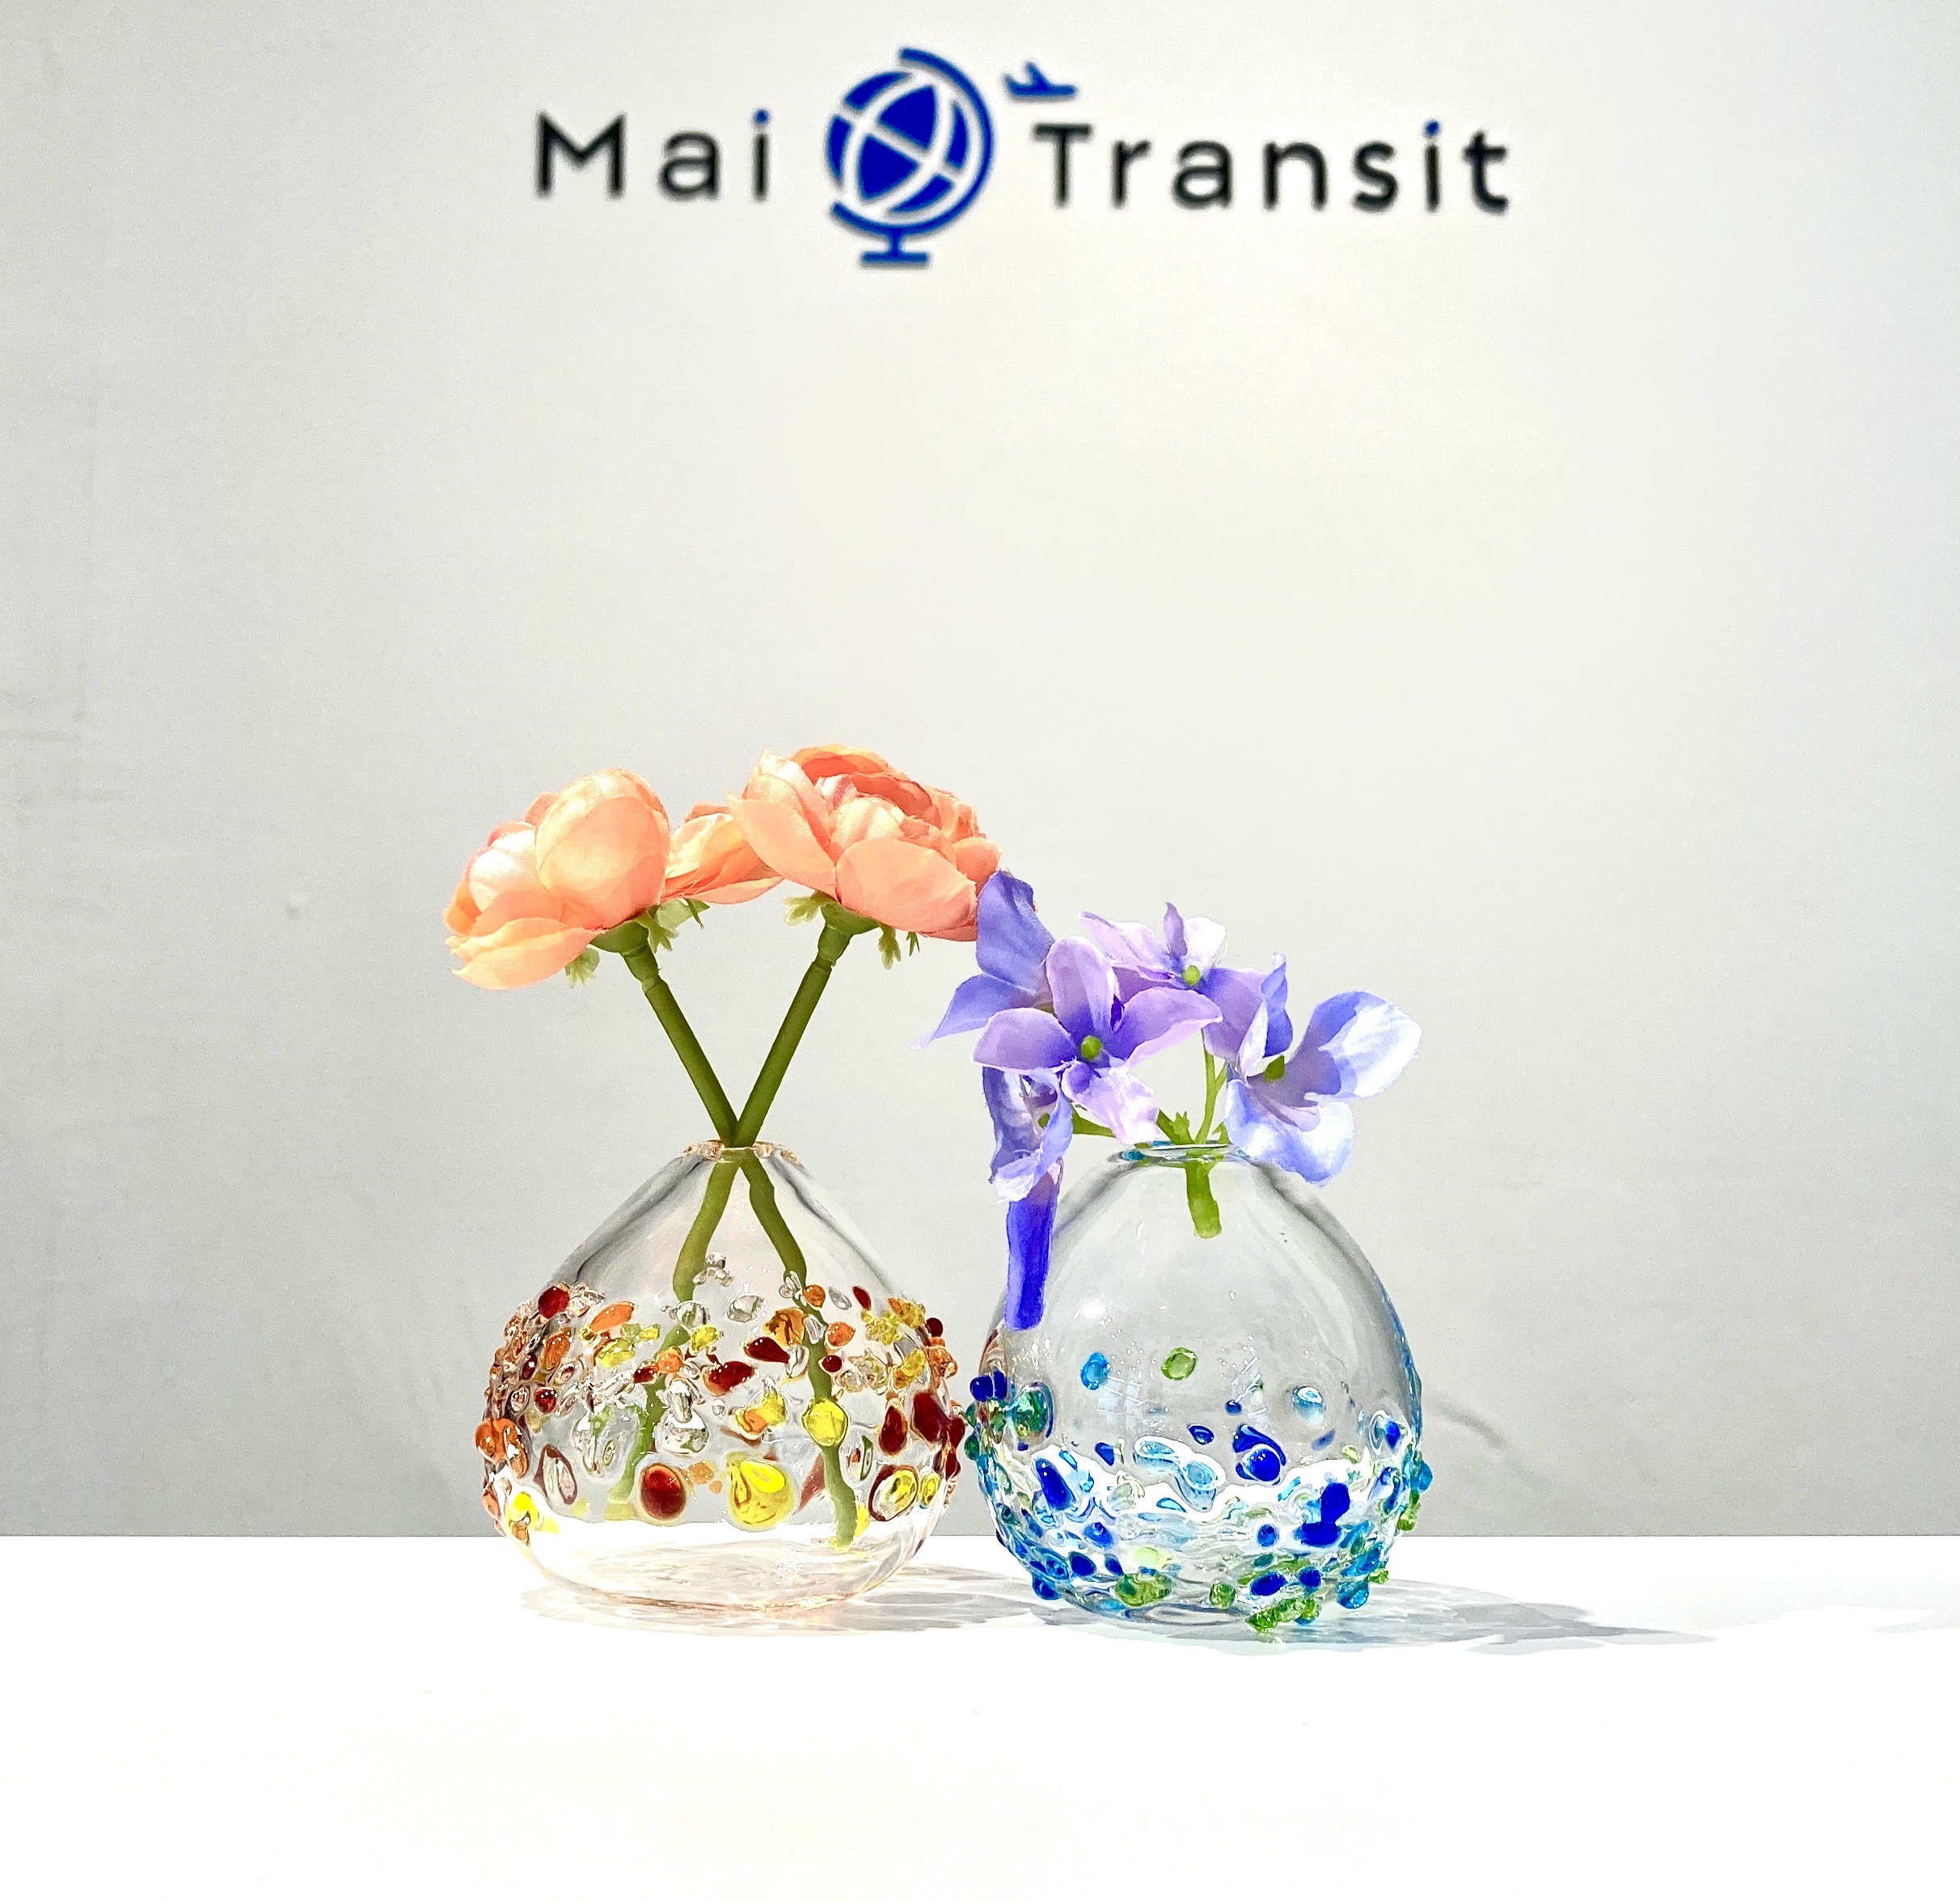 一輪挿し 花器 花瓶 琉球ガラス ガラス 沖縄 かわいい おしゃれ 美しい フラワーベース Maitransit マイトランジット